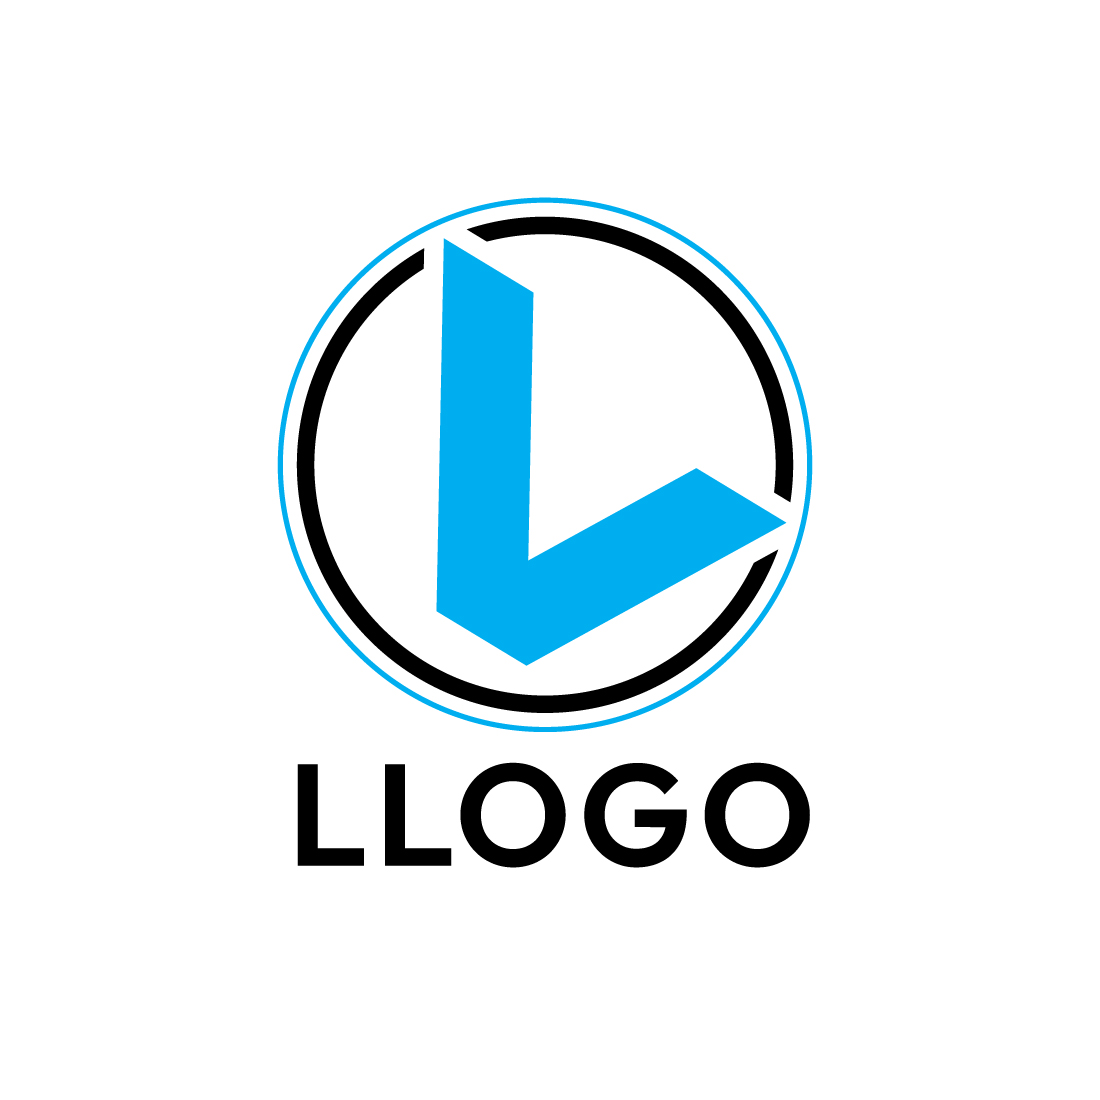 L Logo Design Bundle preview image.